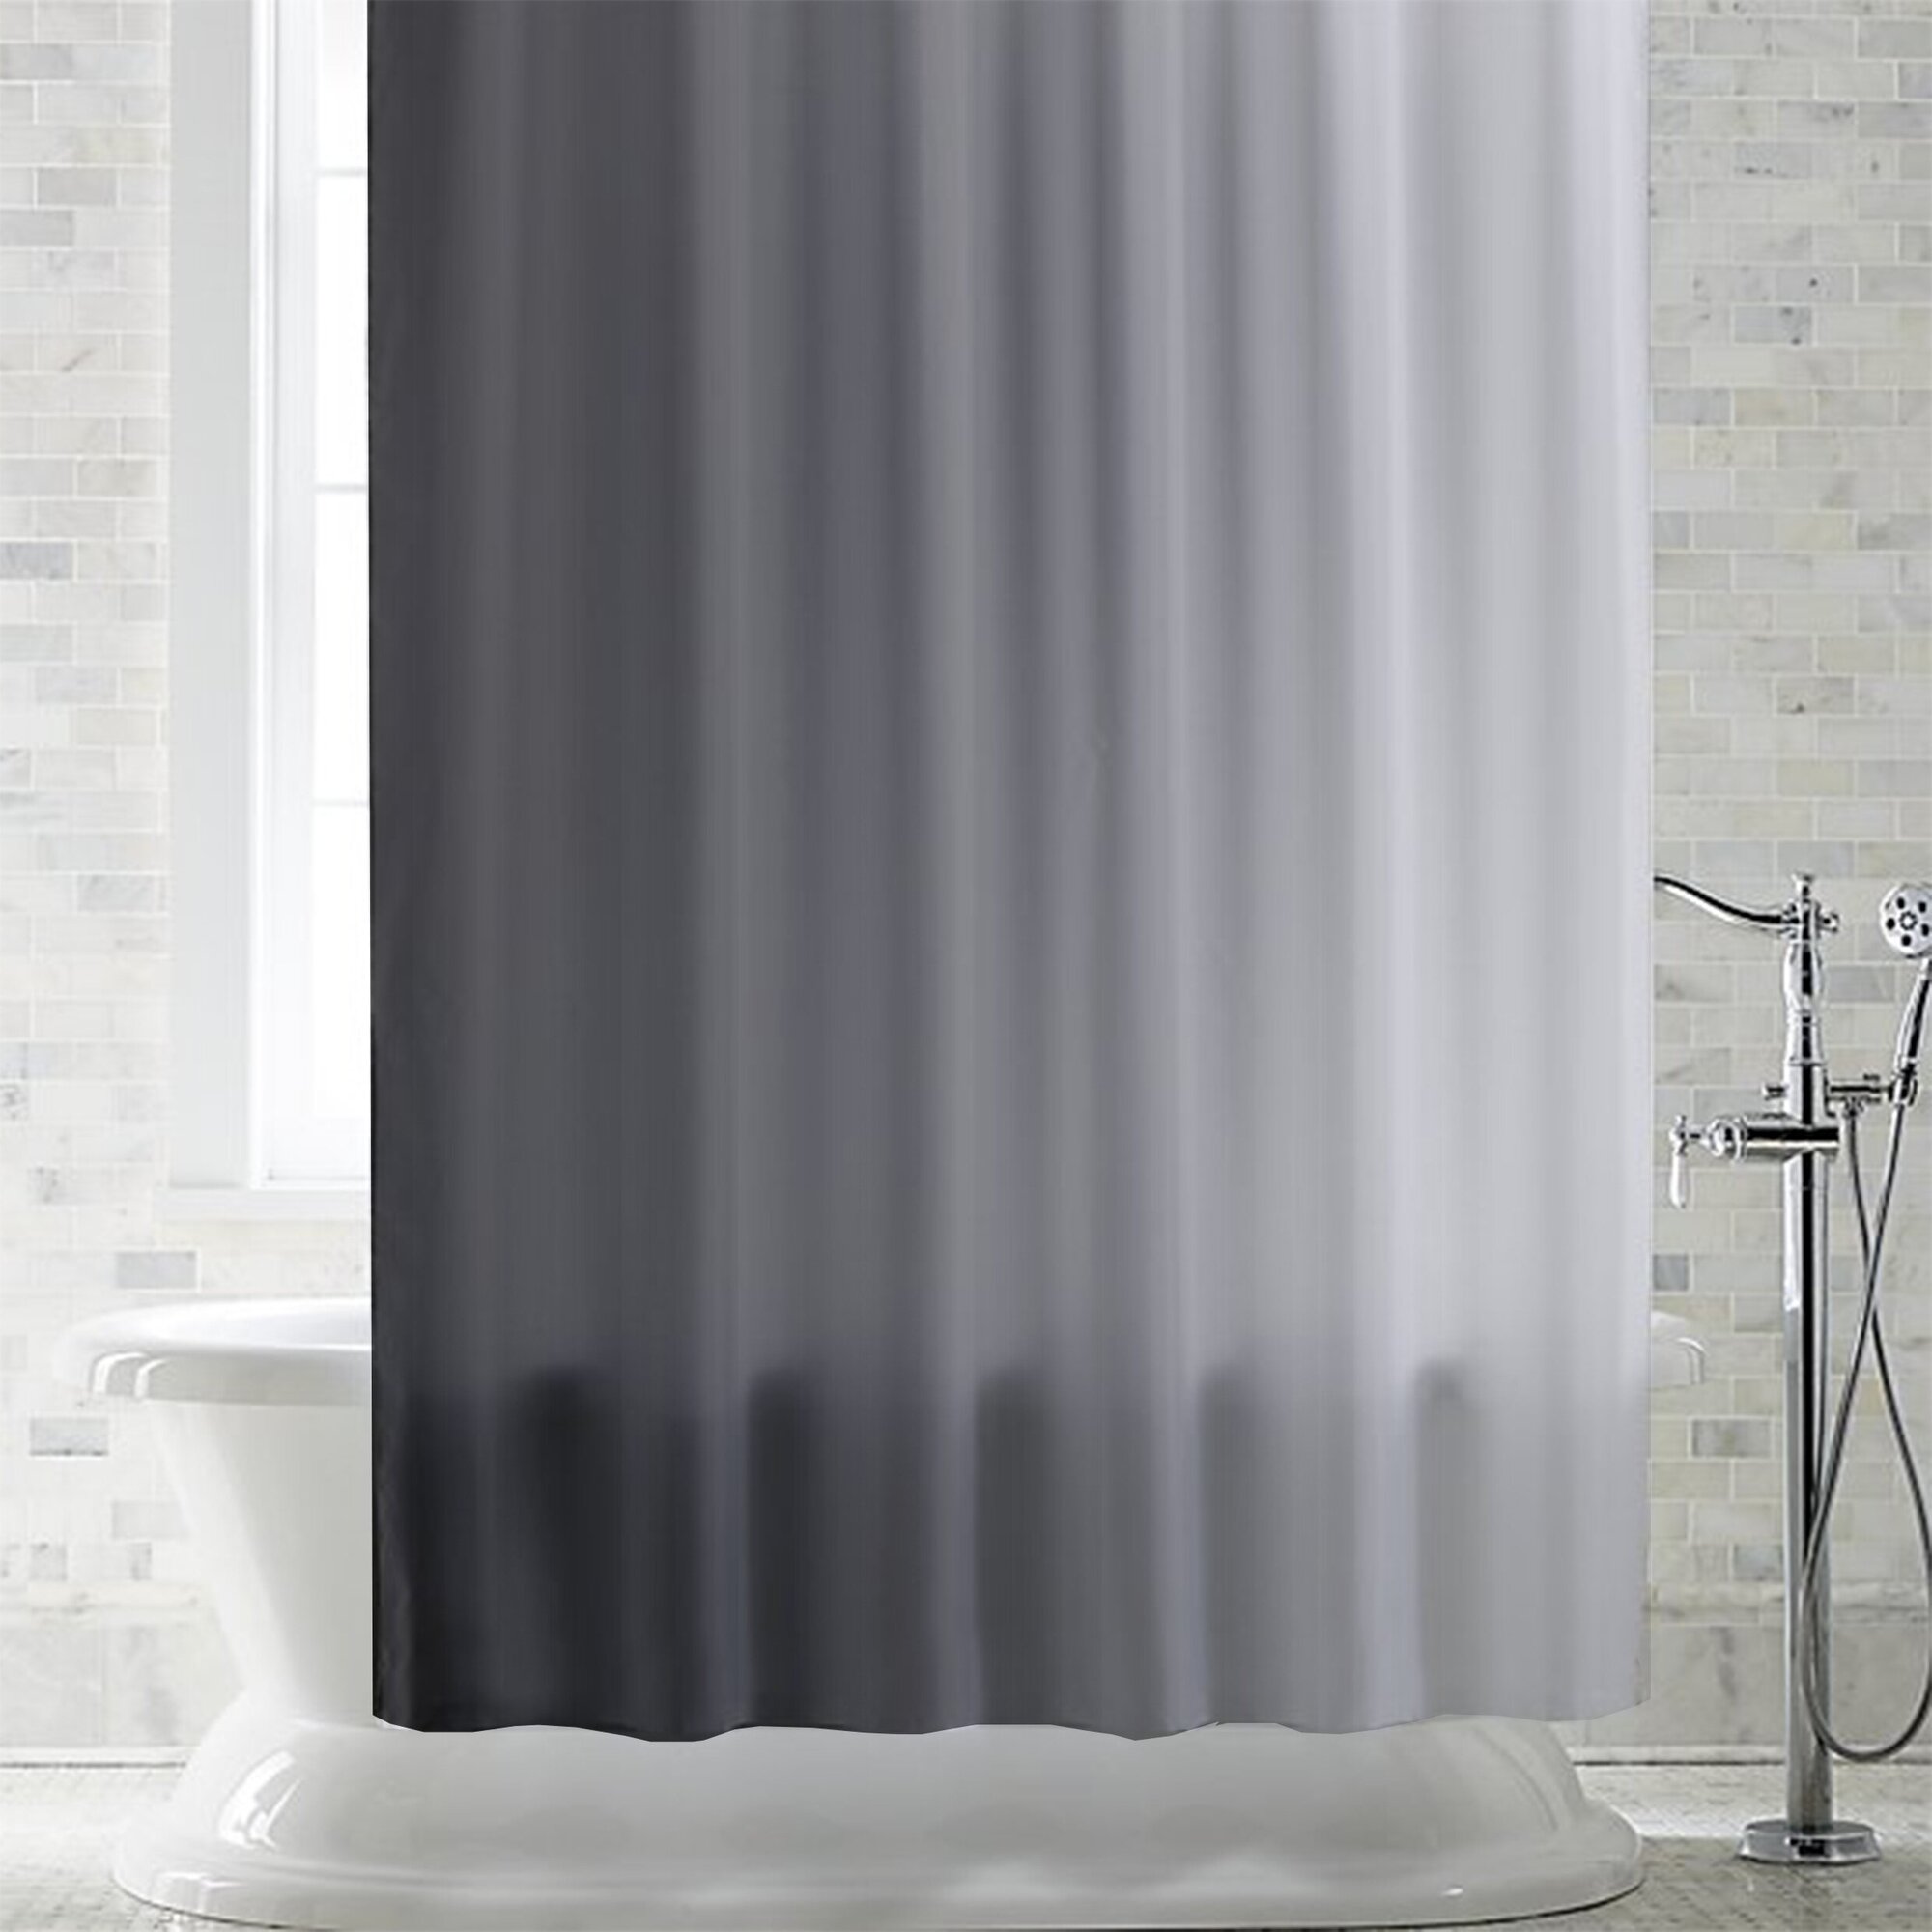 Штора для ванной Primanova DR-40002 SHARM цвет серый, размер 180х200, ткань полиэстер